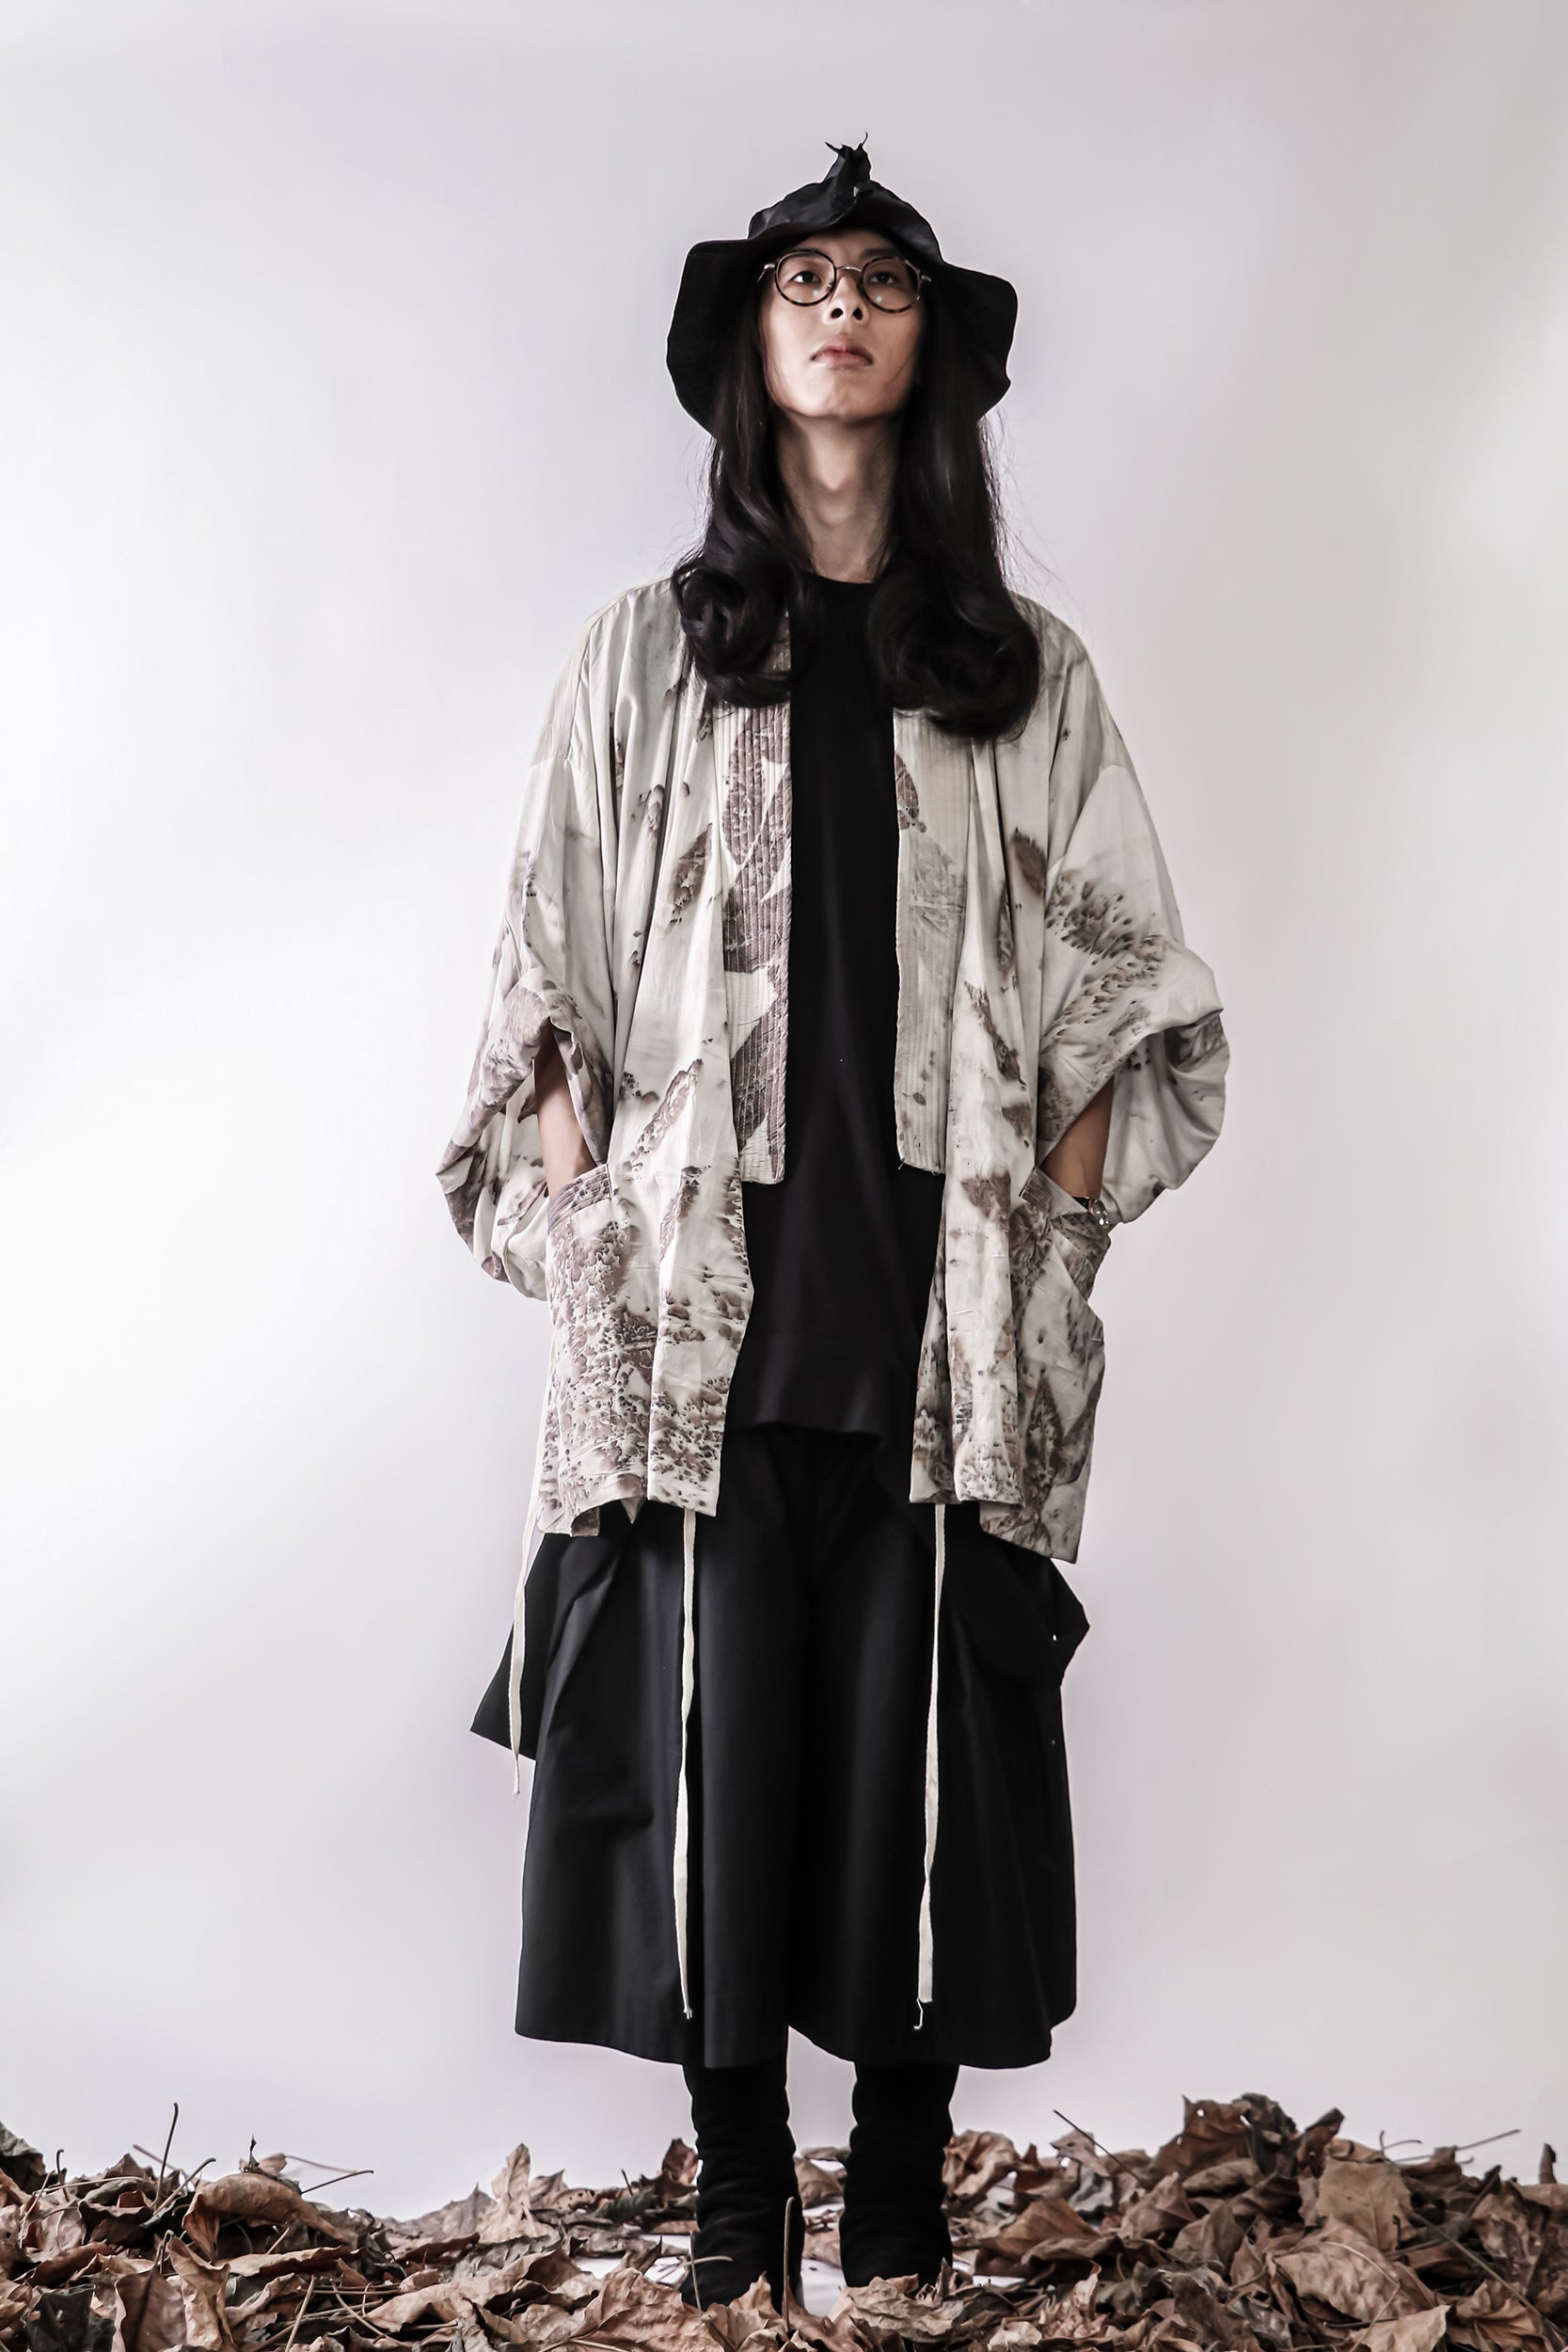 Handmade Botanical Print Oversize Kimono Jacket